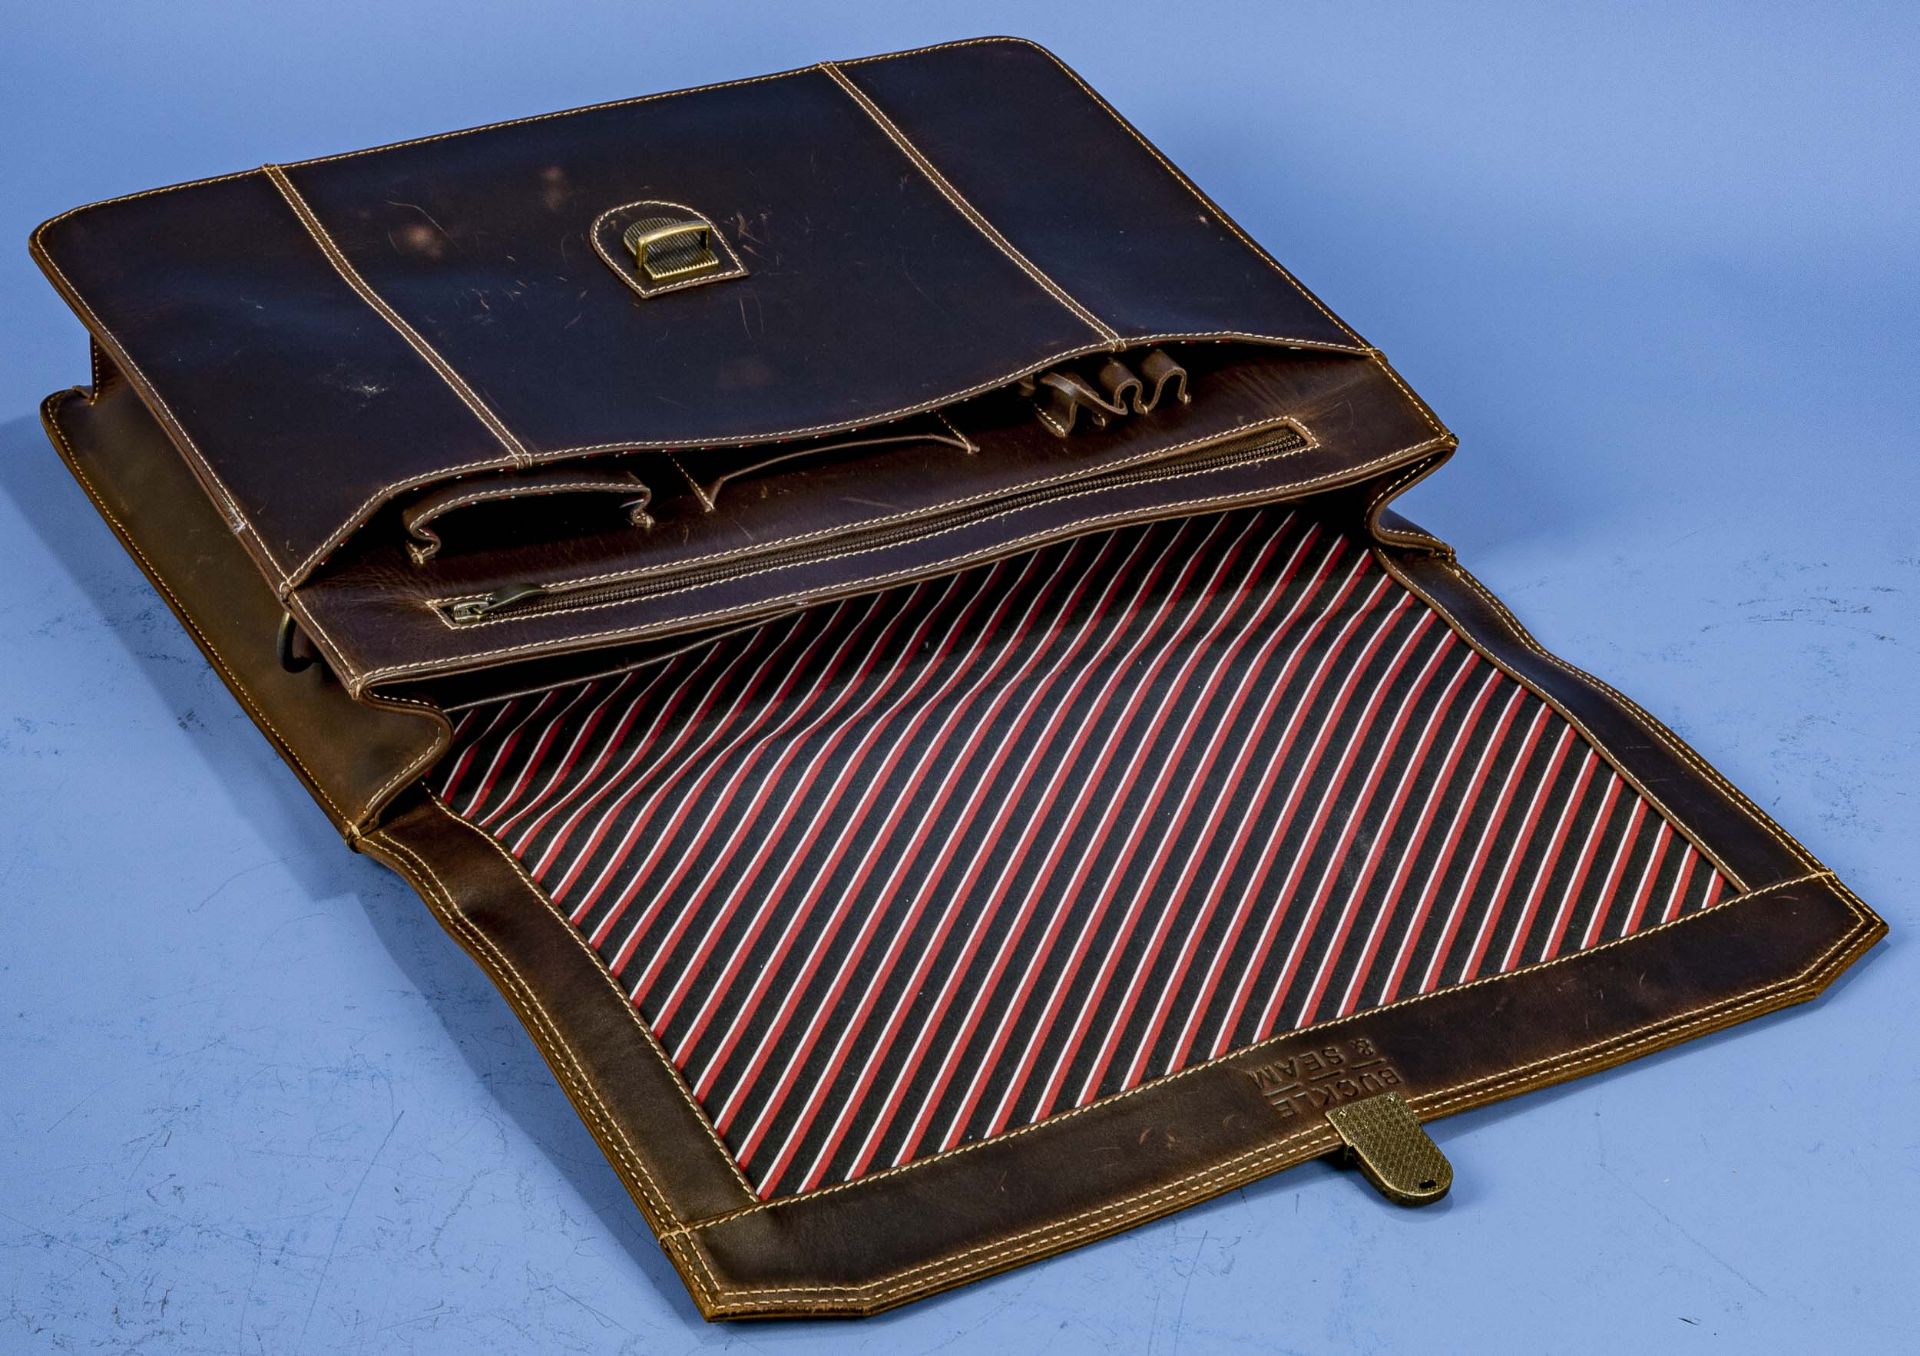 "BUCKLE & SEAM" Aktentasche in klassischer Formgebung, braunes Leder, innen mit farbig gestreiftem  - Bild 6 aus 11